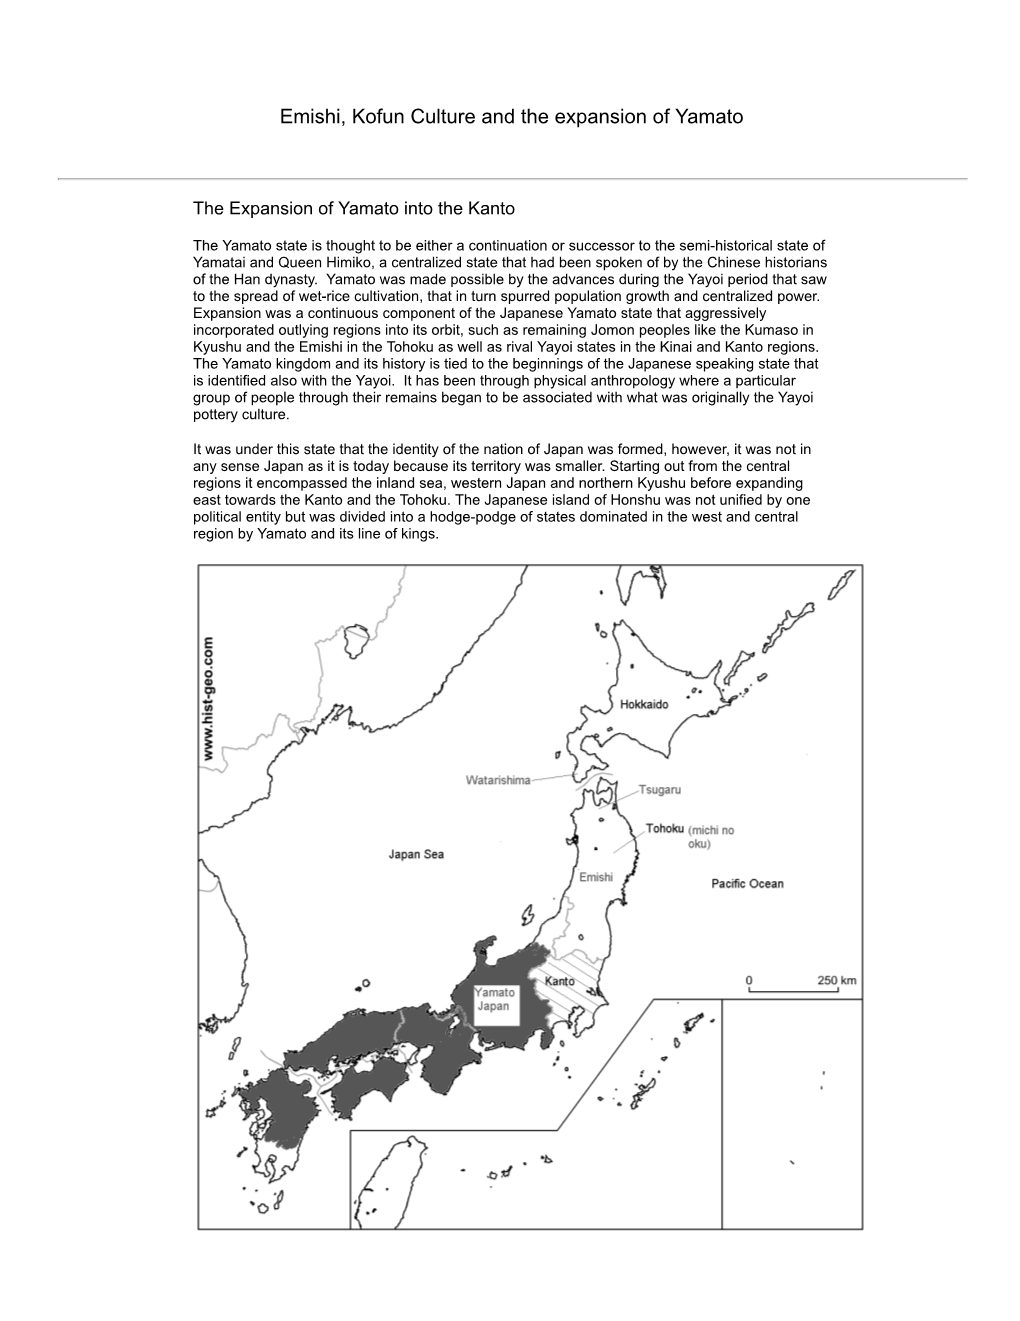 Emishi, Kofun Culture and the Expansion of Yamato